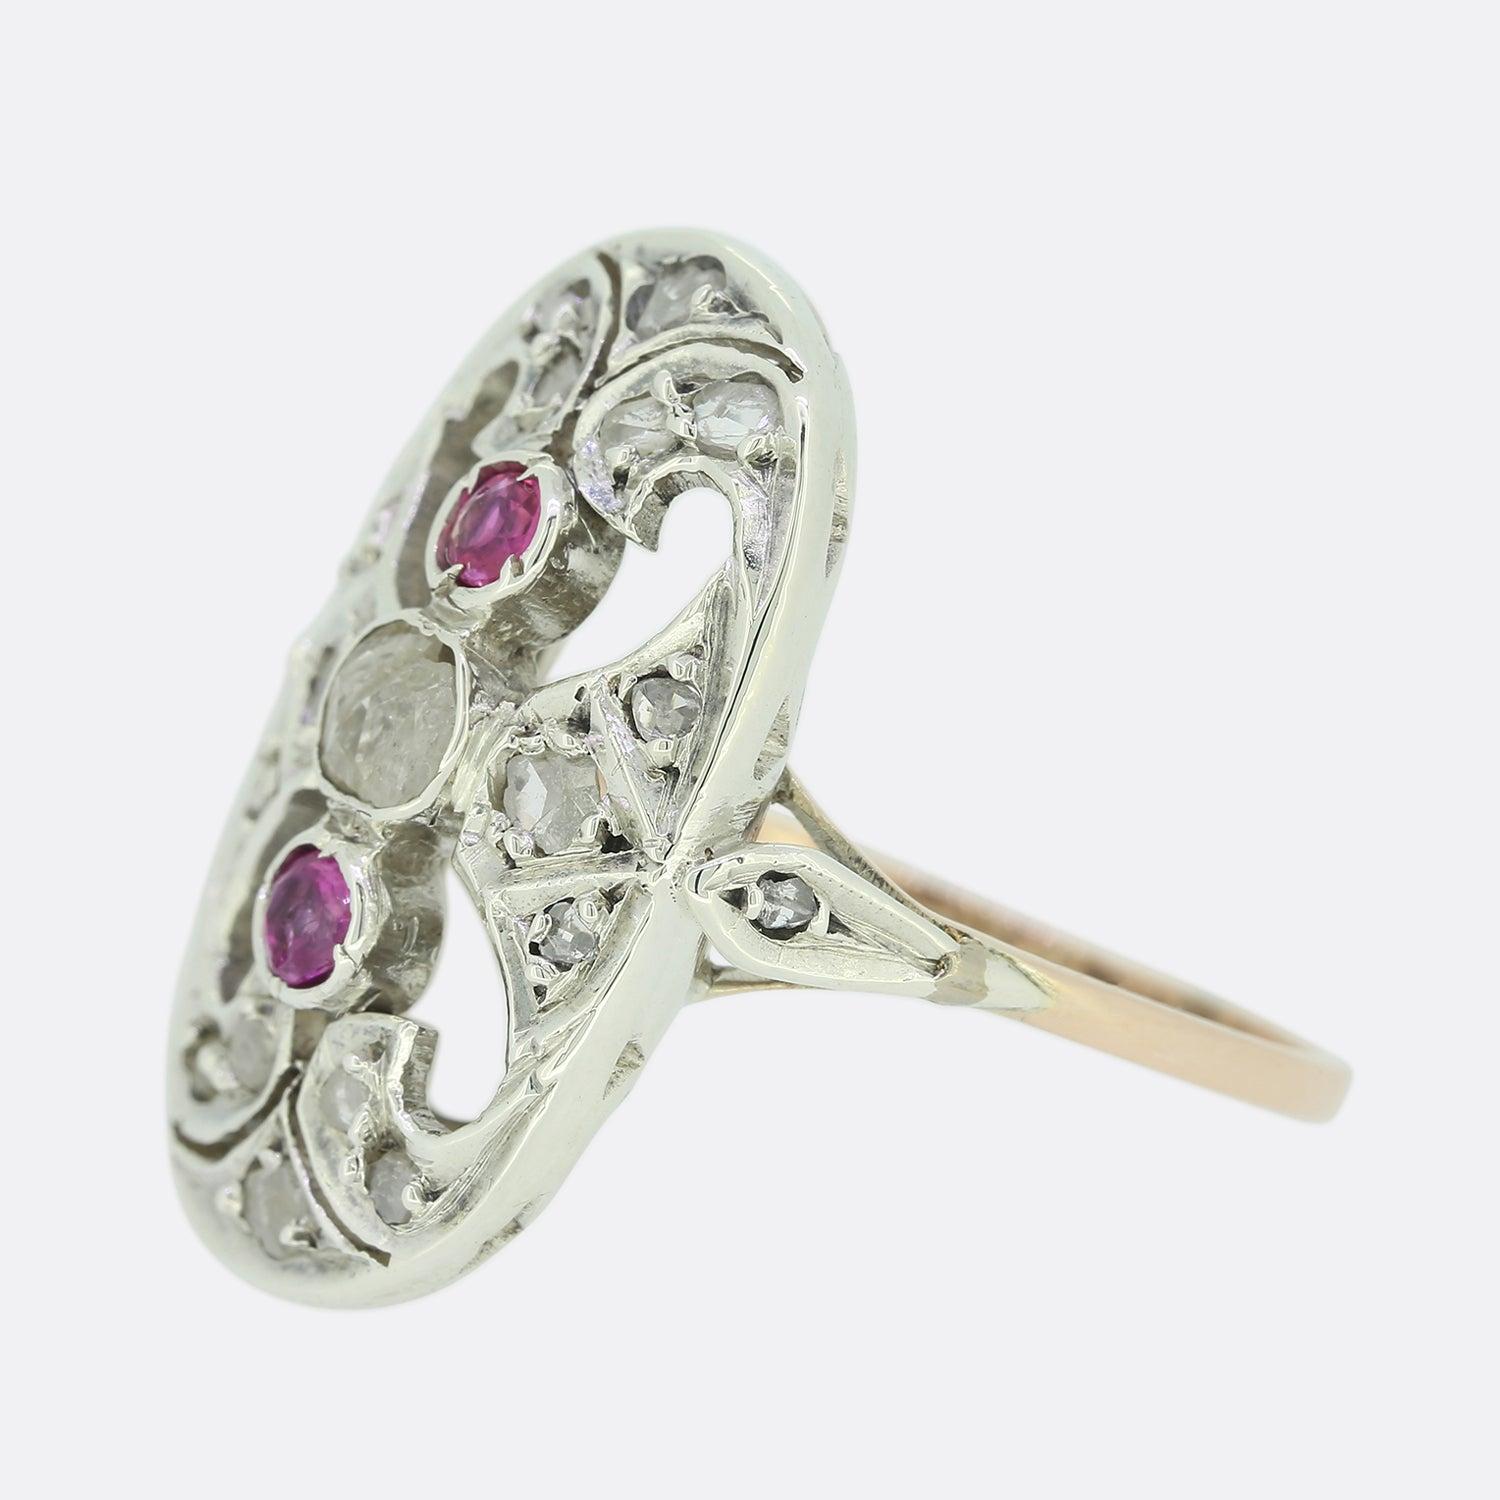 Dies ist ein schöner edwardianischer Ring mit rosa Saphiren und Diamanten. In der Mitte befindet sich ein Diamant im Rosenschliff, über und unter dem ein rosafarbener Saphir gefasst ist, umgeben von einer Umrandung aus weiteren Diamanten im